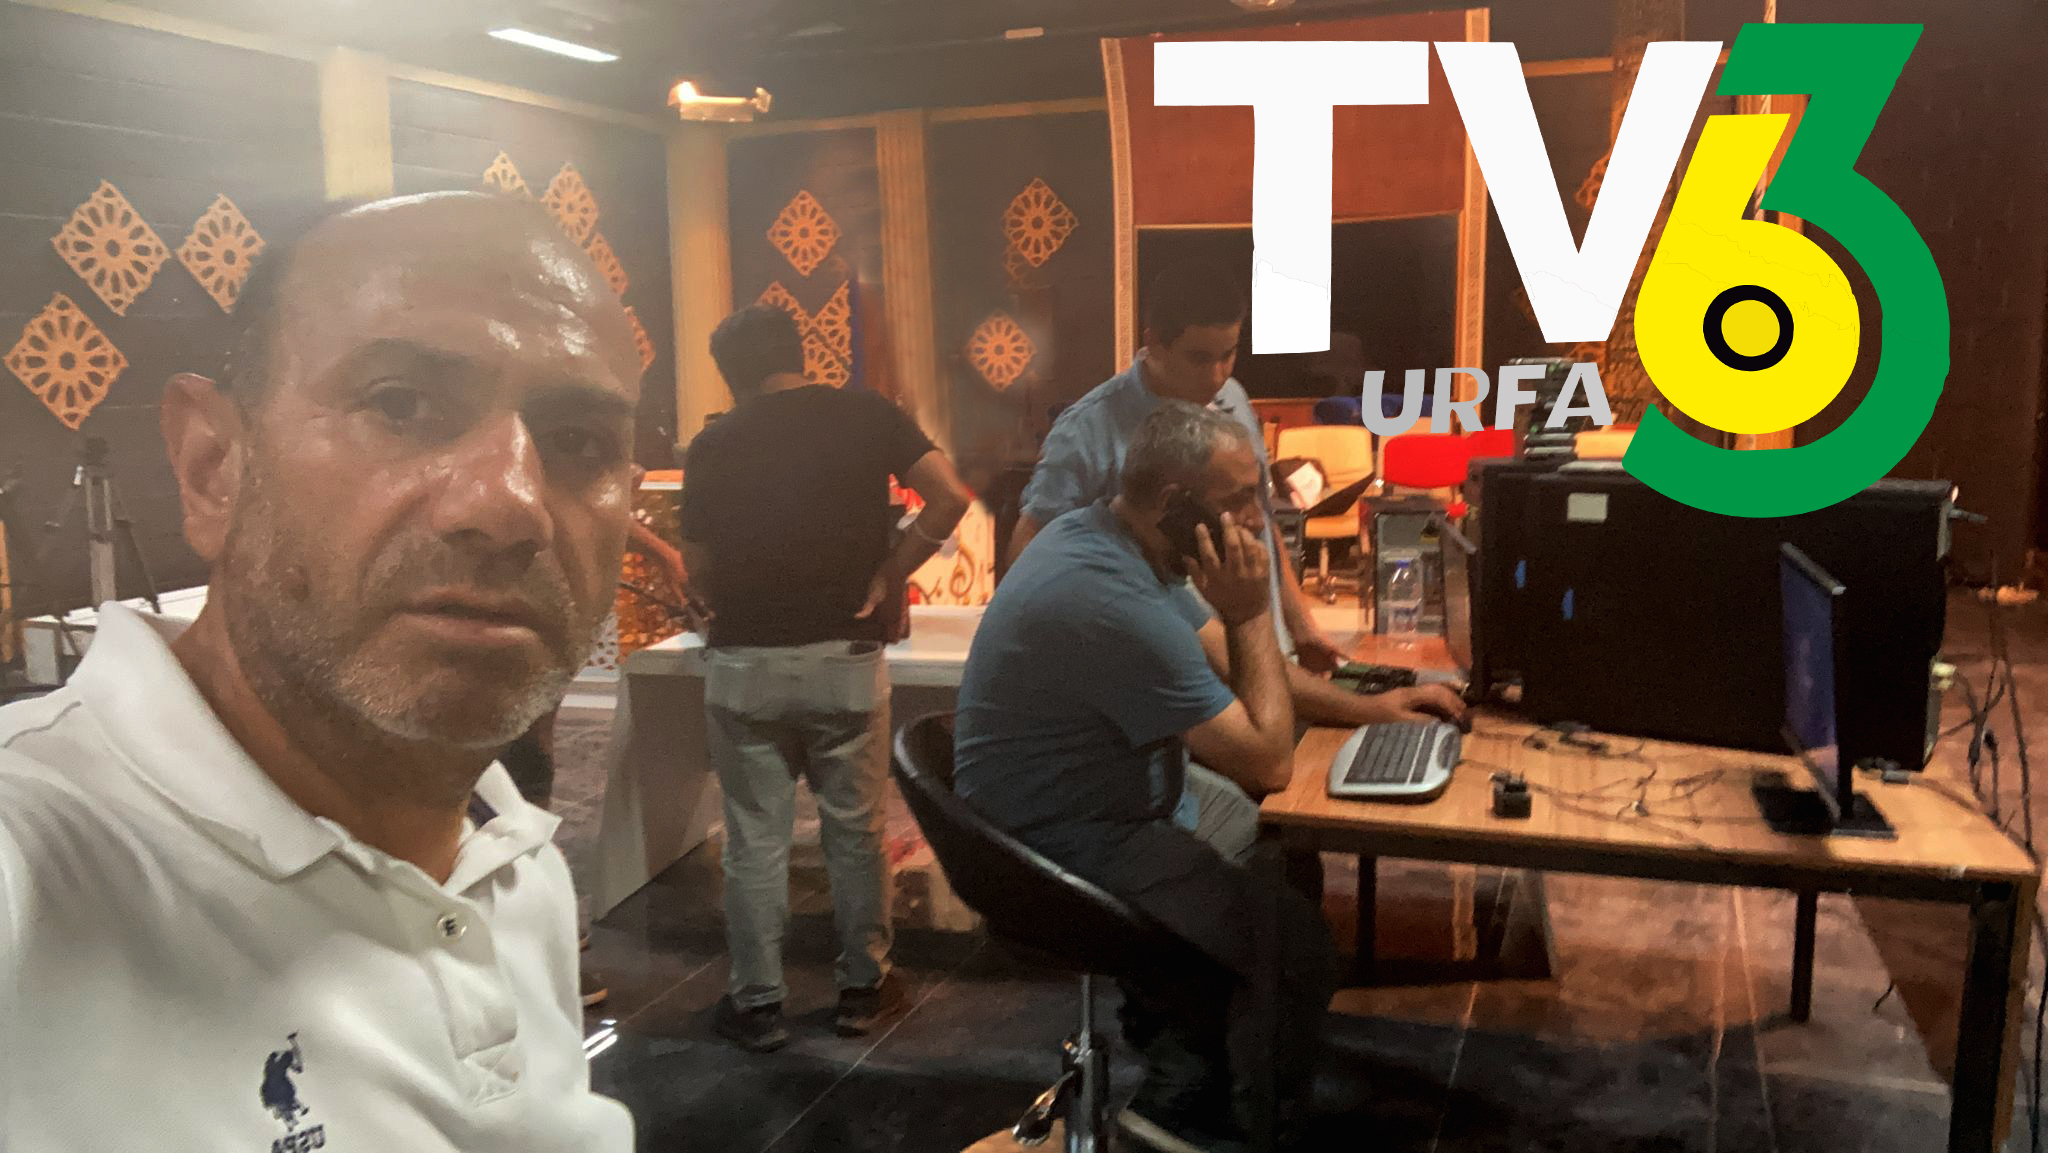 Urfa’nın yeni kanalı TV 63 kuruluyor